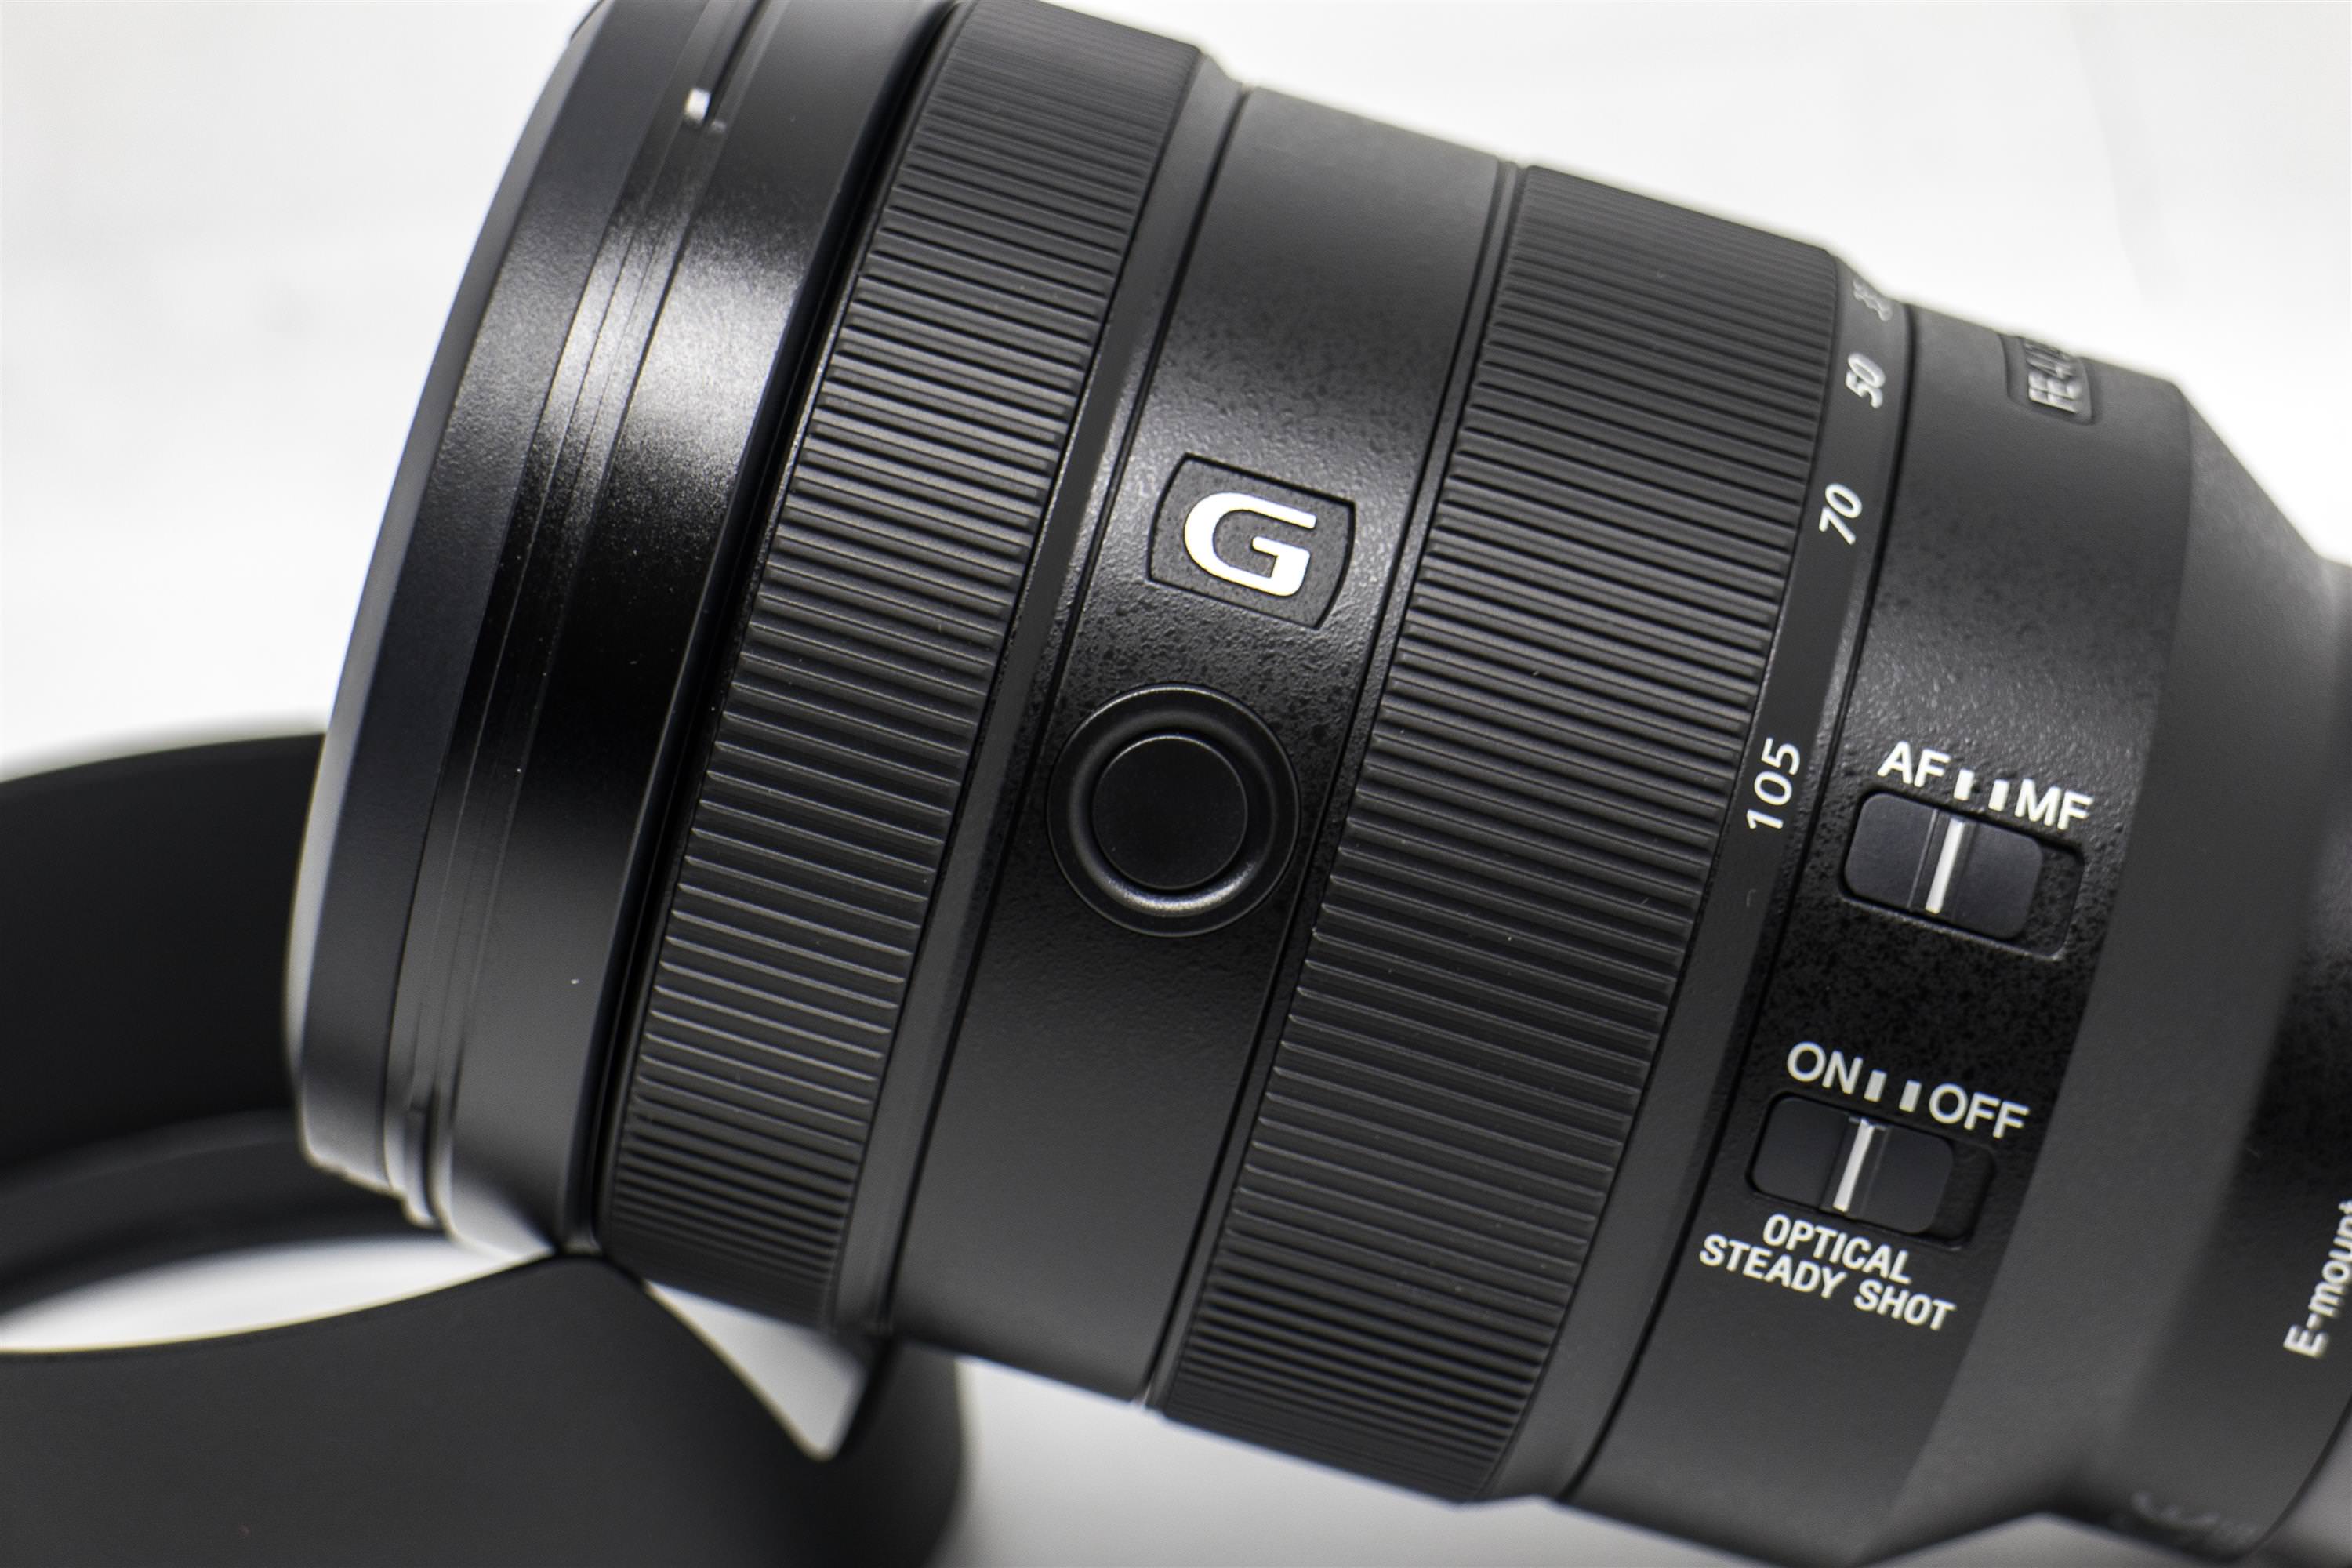 [比攝影88] Sony FE 24-105mm F4 G OSS 開箱介紹 , A7 / A9 最熱門實用標準變焦鏡